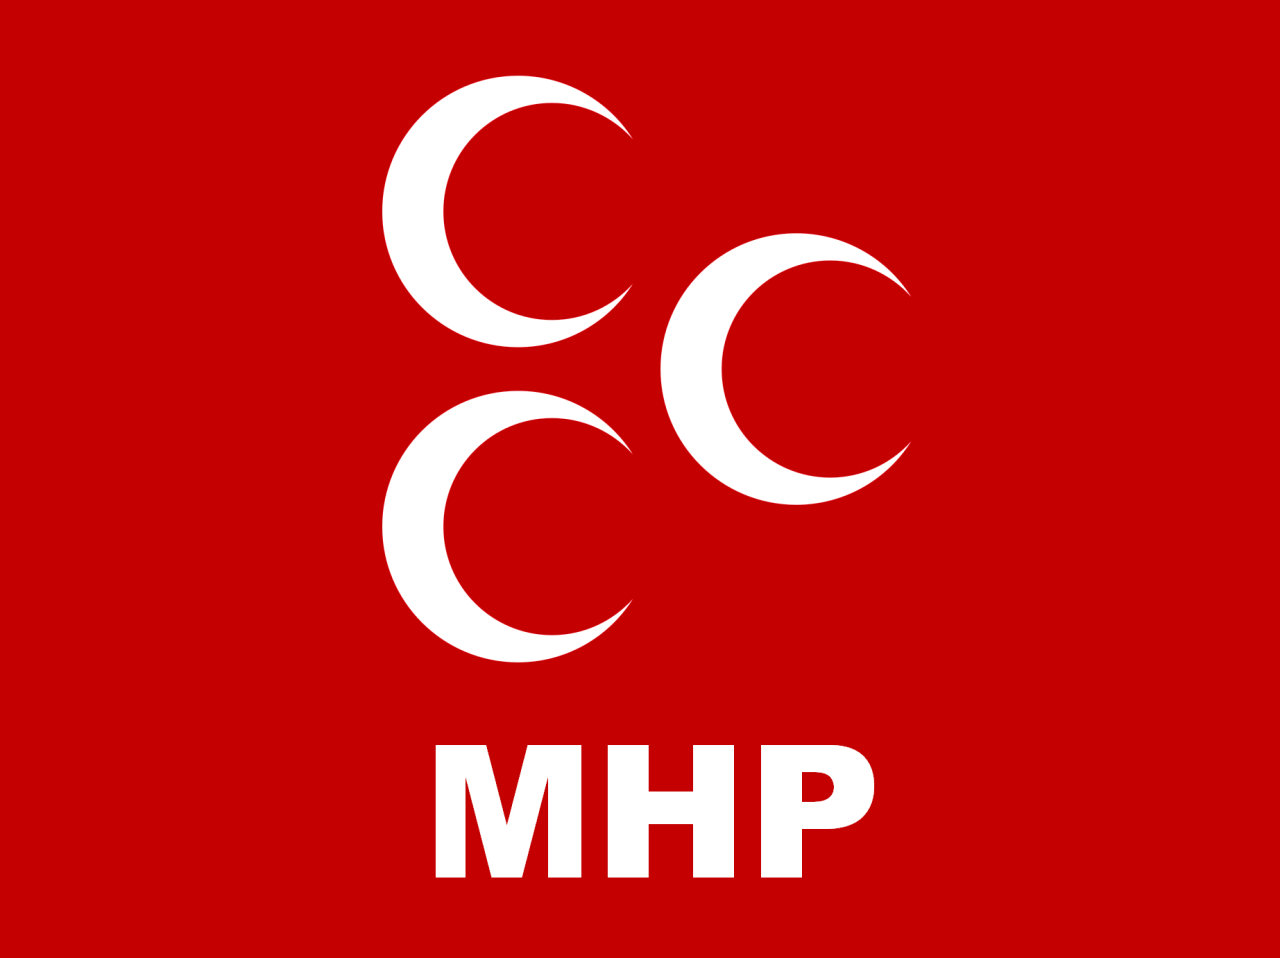 MHP hərbçilərin özbaşına cəzalandırılmasının əleyhinədir